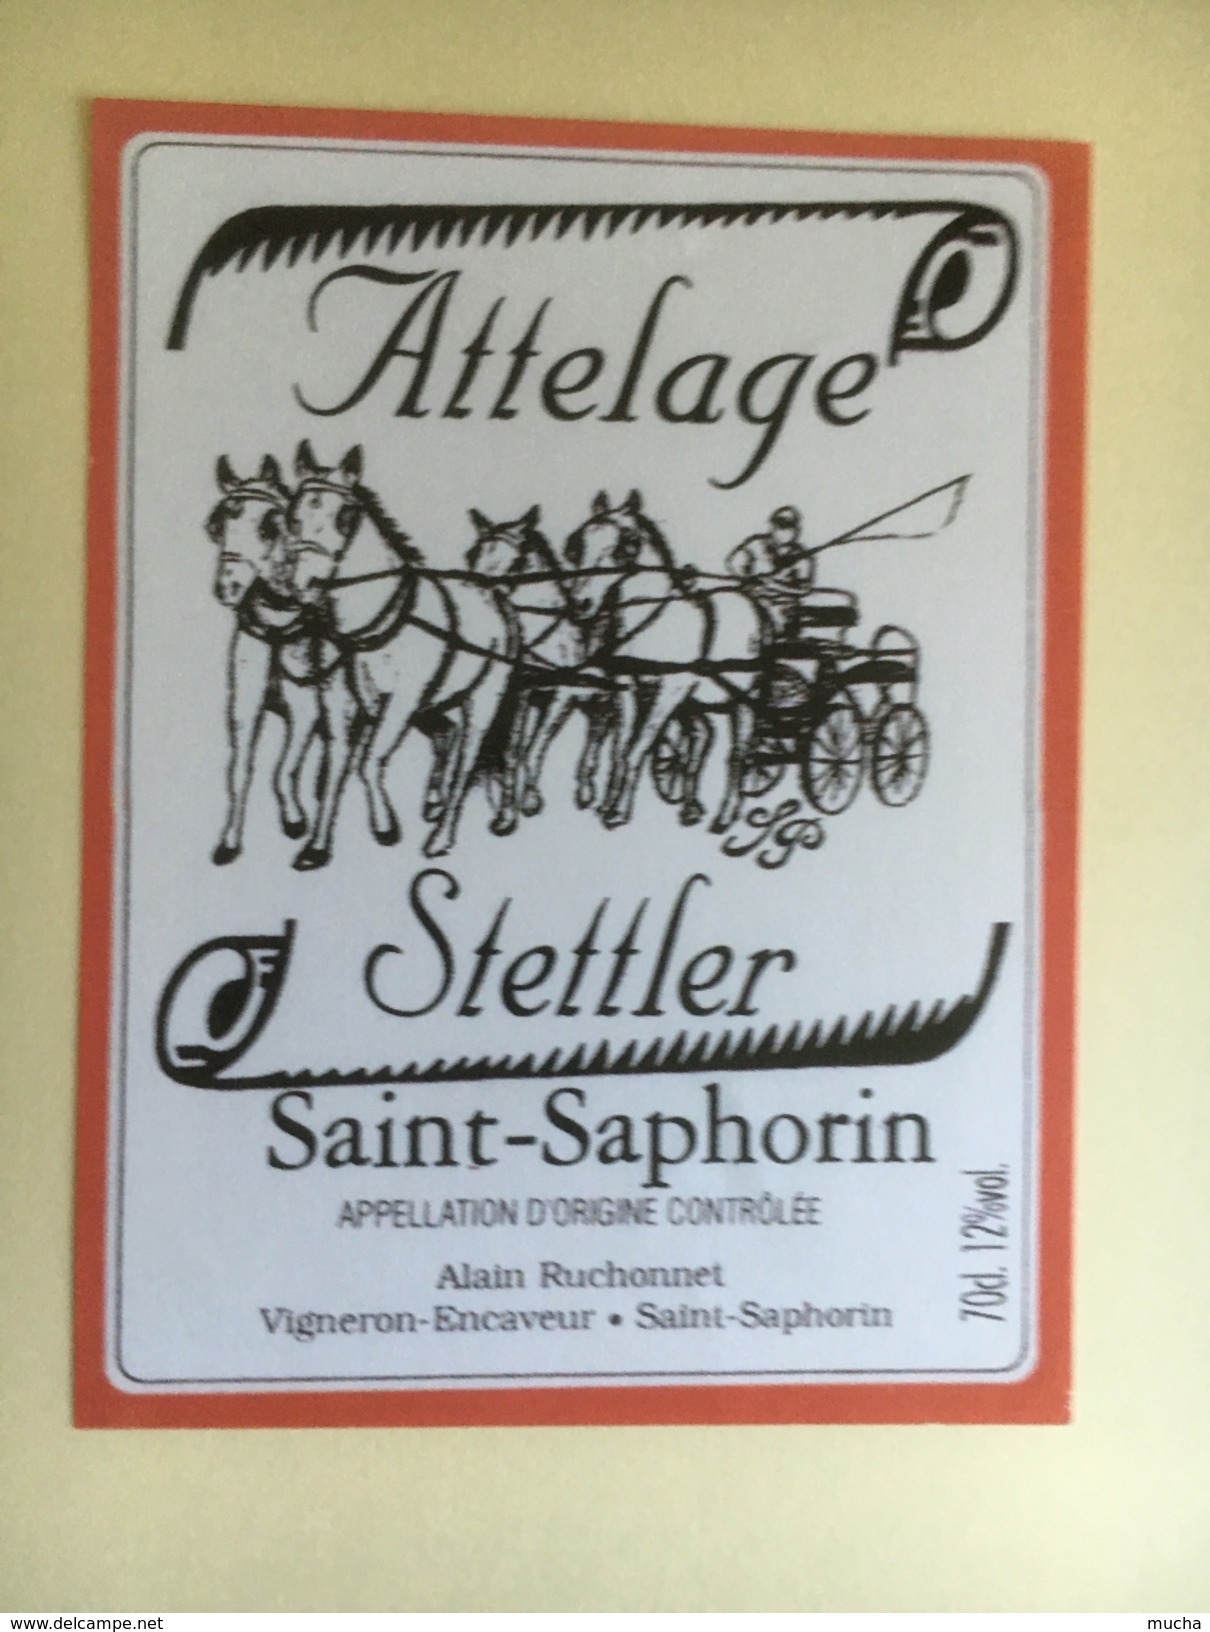 1211 - Suisse Saint-Saphorin Attelage Stettler - Chevaux